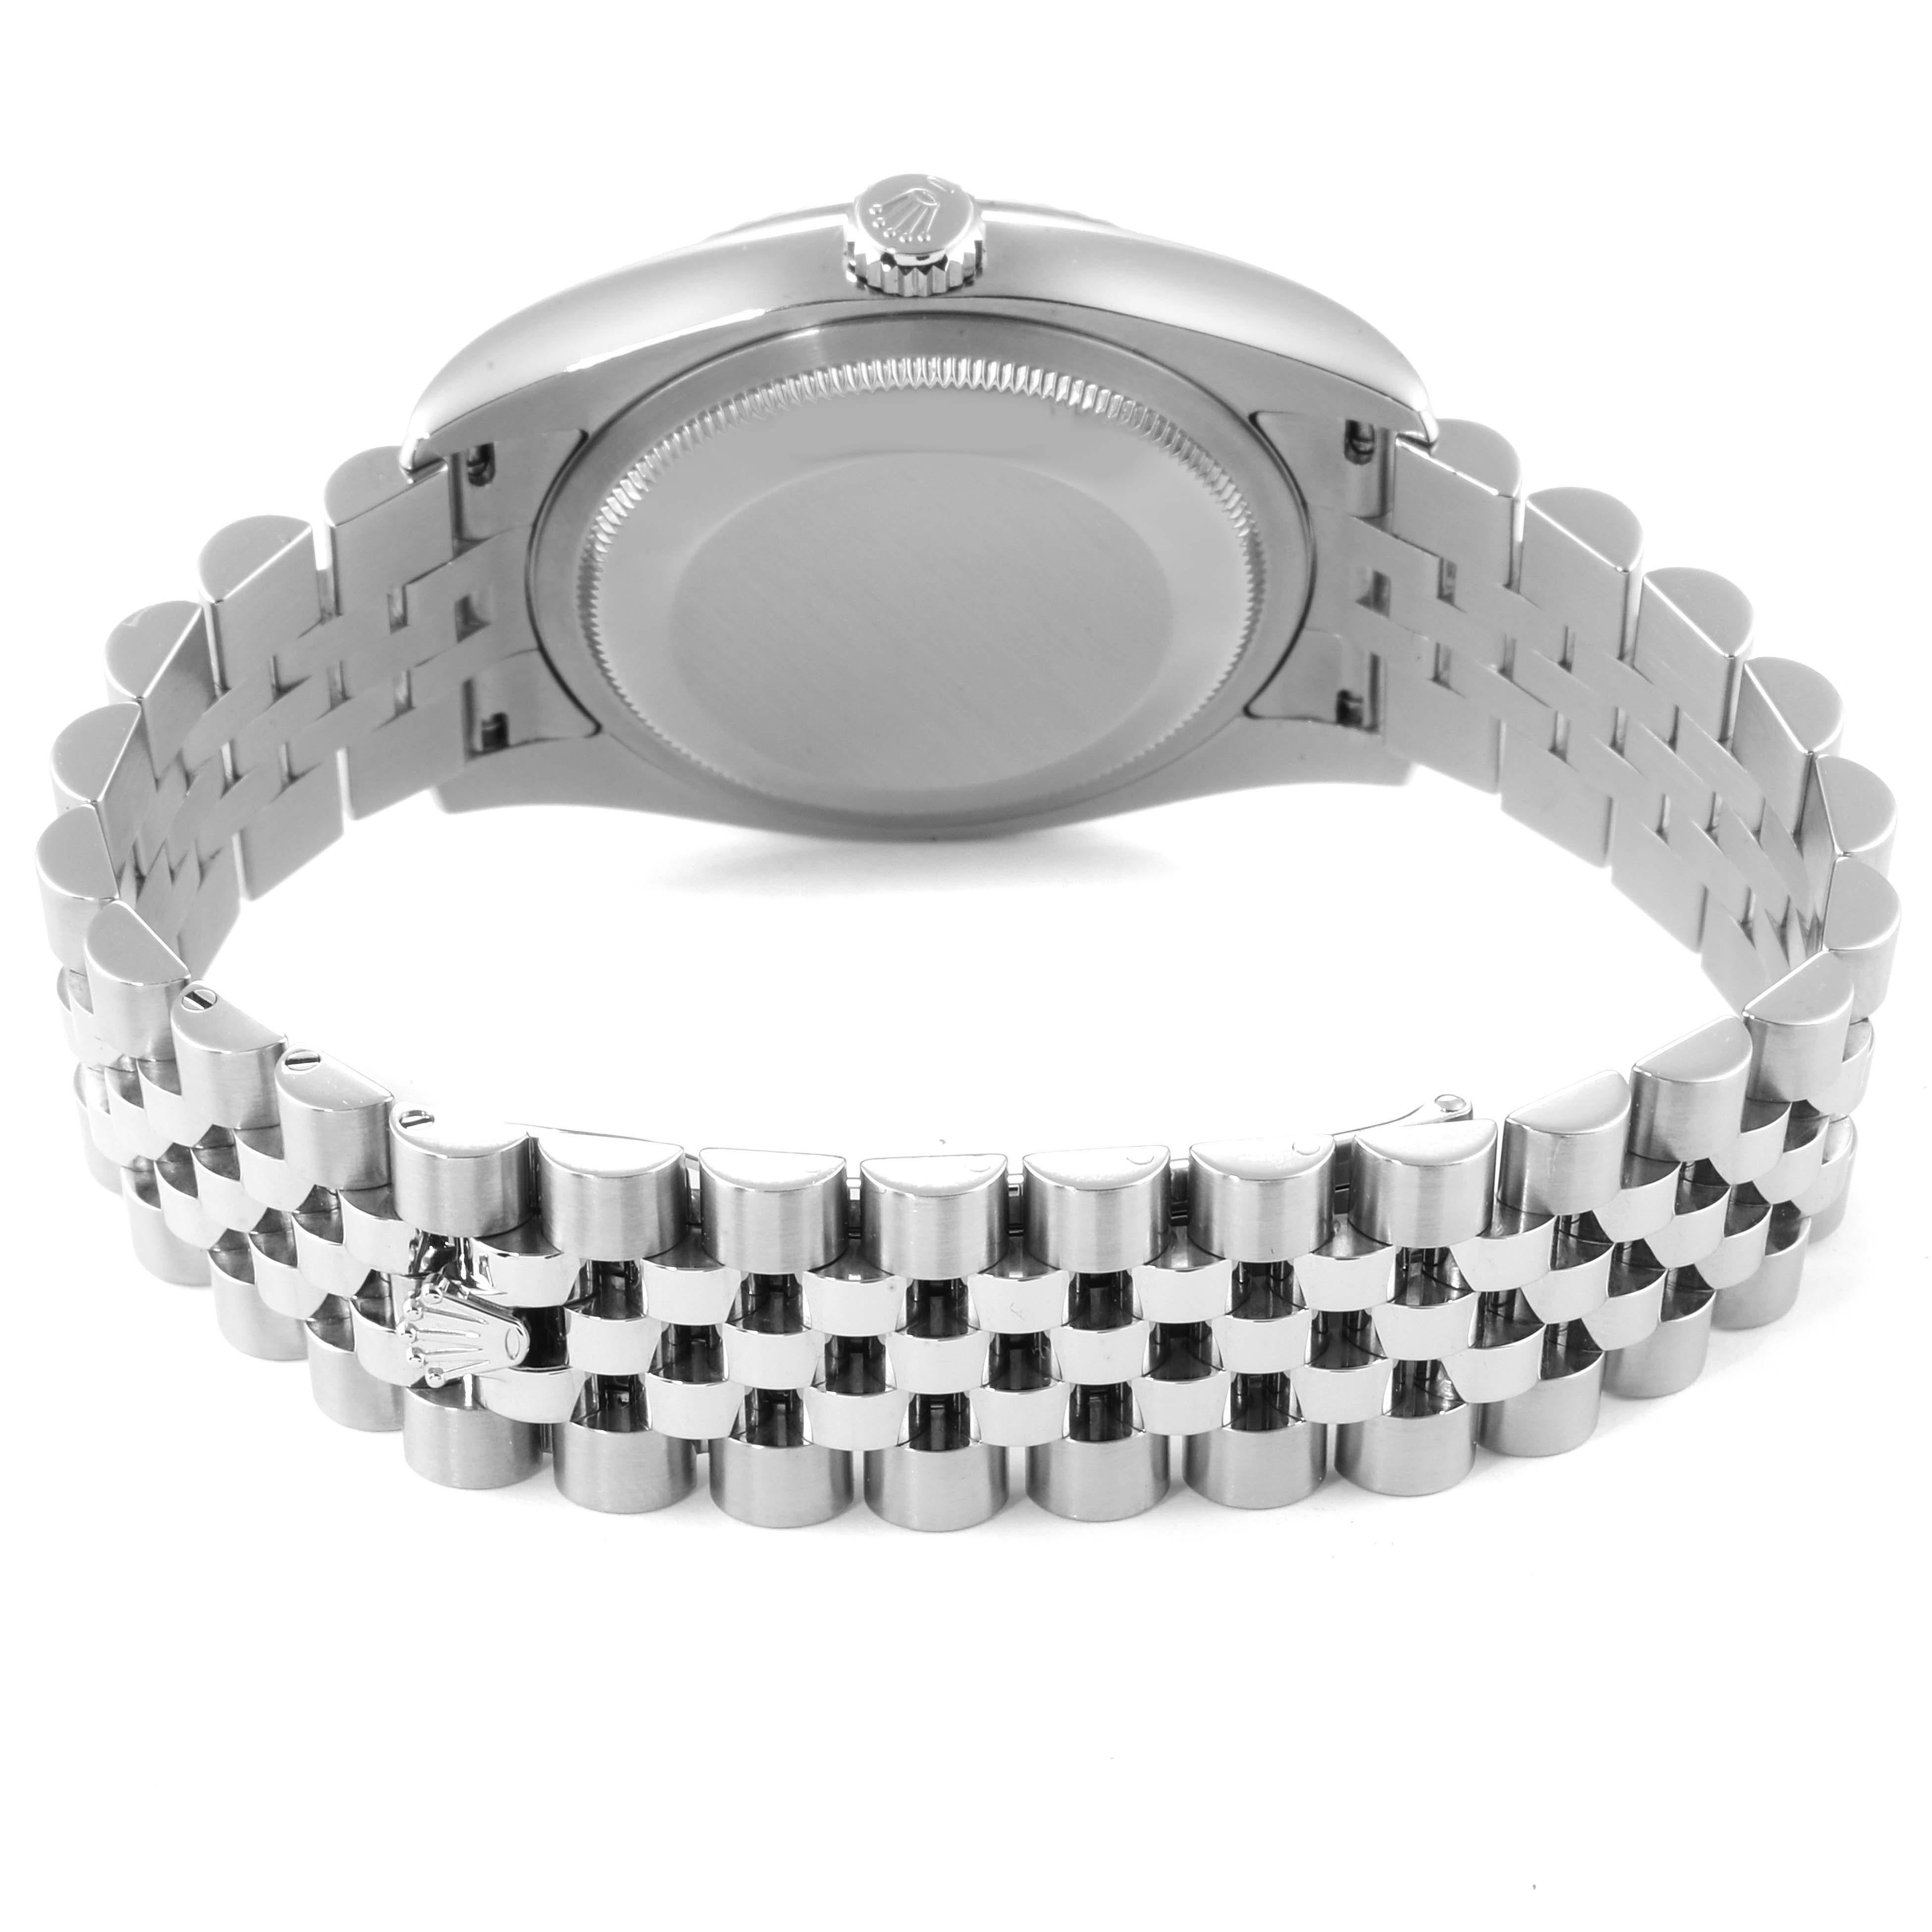 Rolex Datejust Steel White Gold Jubilee Bracelet Watch 116234 For Sale 5